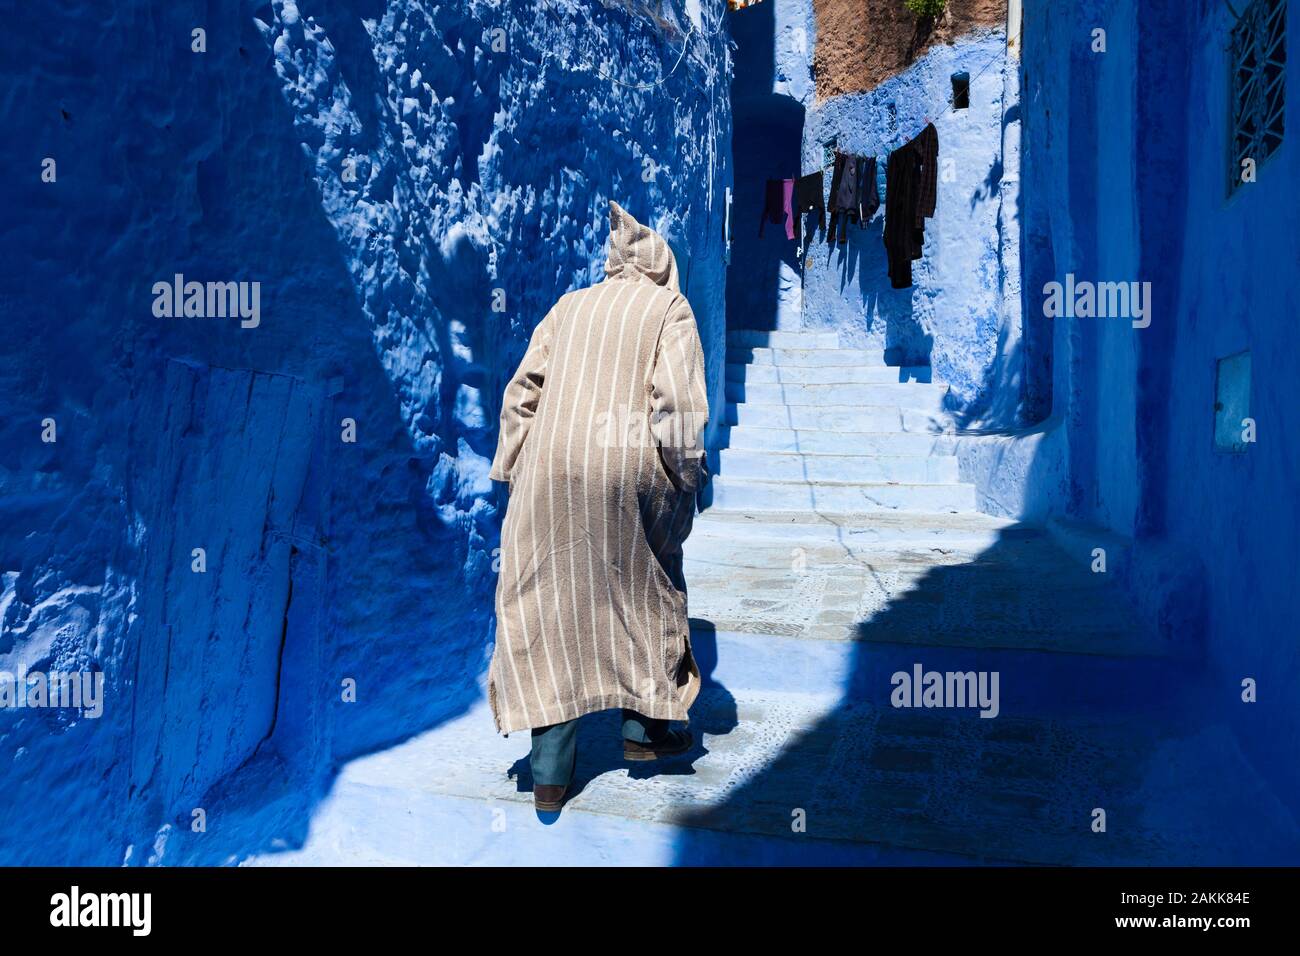 Homme dans la djellaba à rayures marchant dans les escaliers dans la rue étroite de la médina de Chefchaouen (également connu sous le nom de Chaouen), au Maroc Banque D'Images